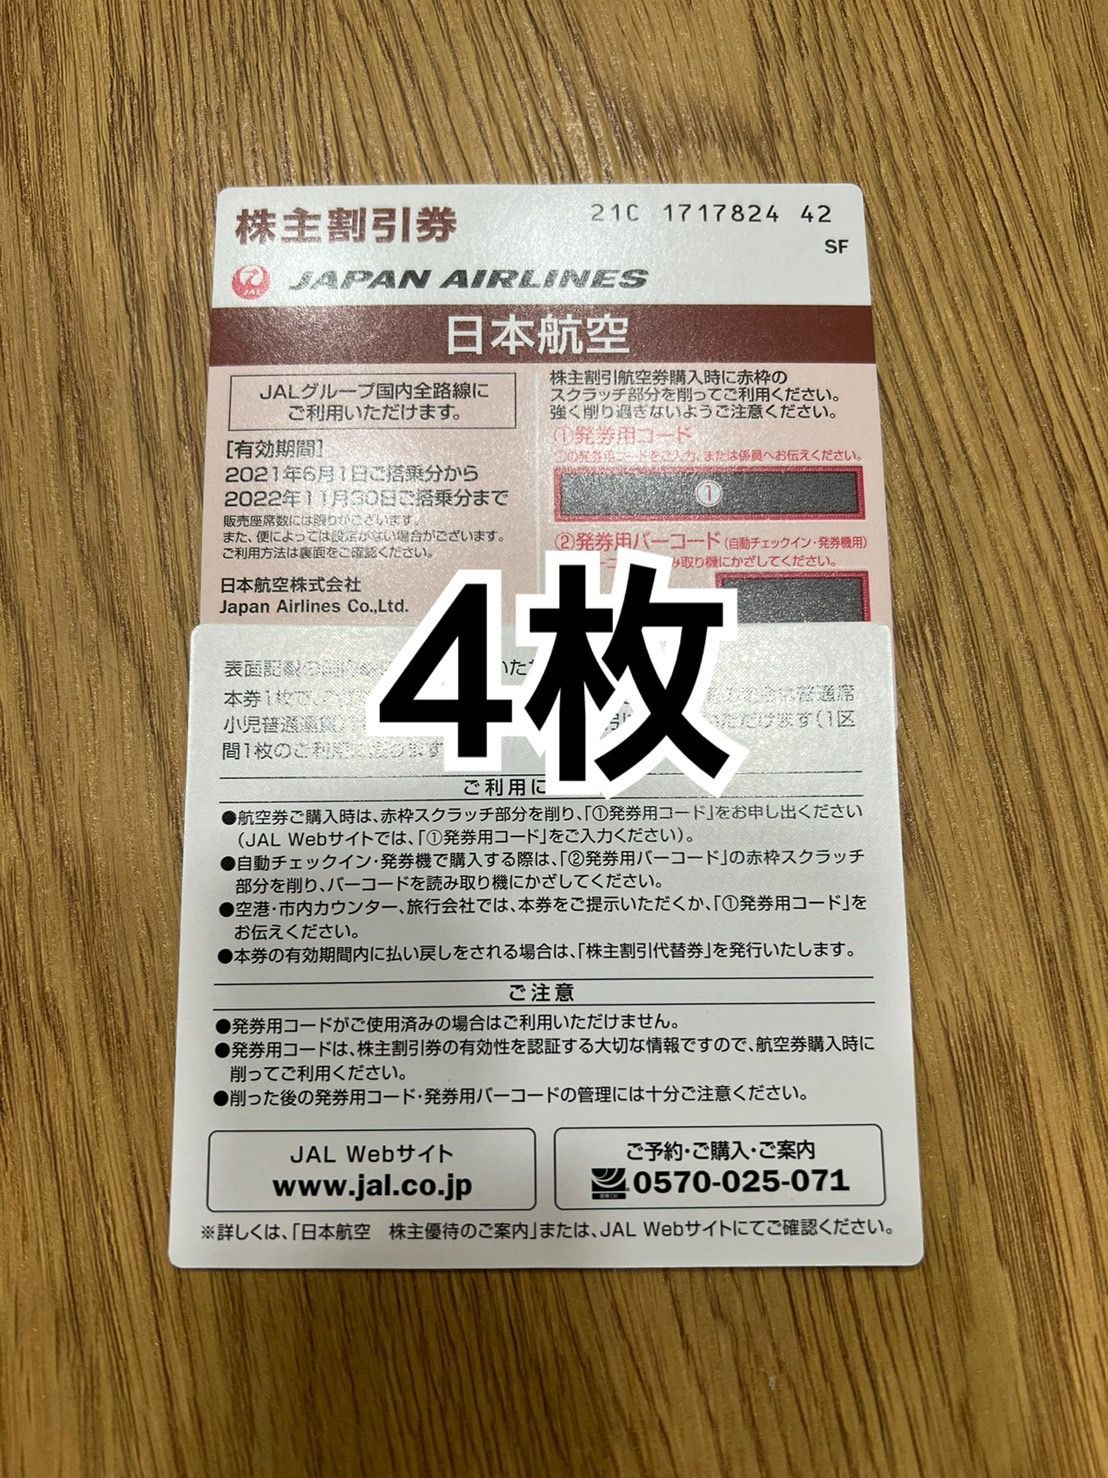 【までの】 日本航空JAL 株主優待券 4枚 aNbOd-m92231269220 となる